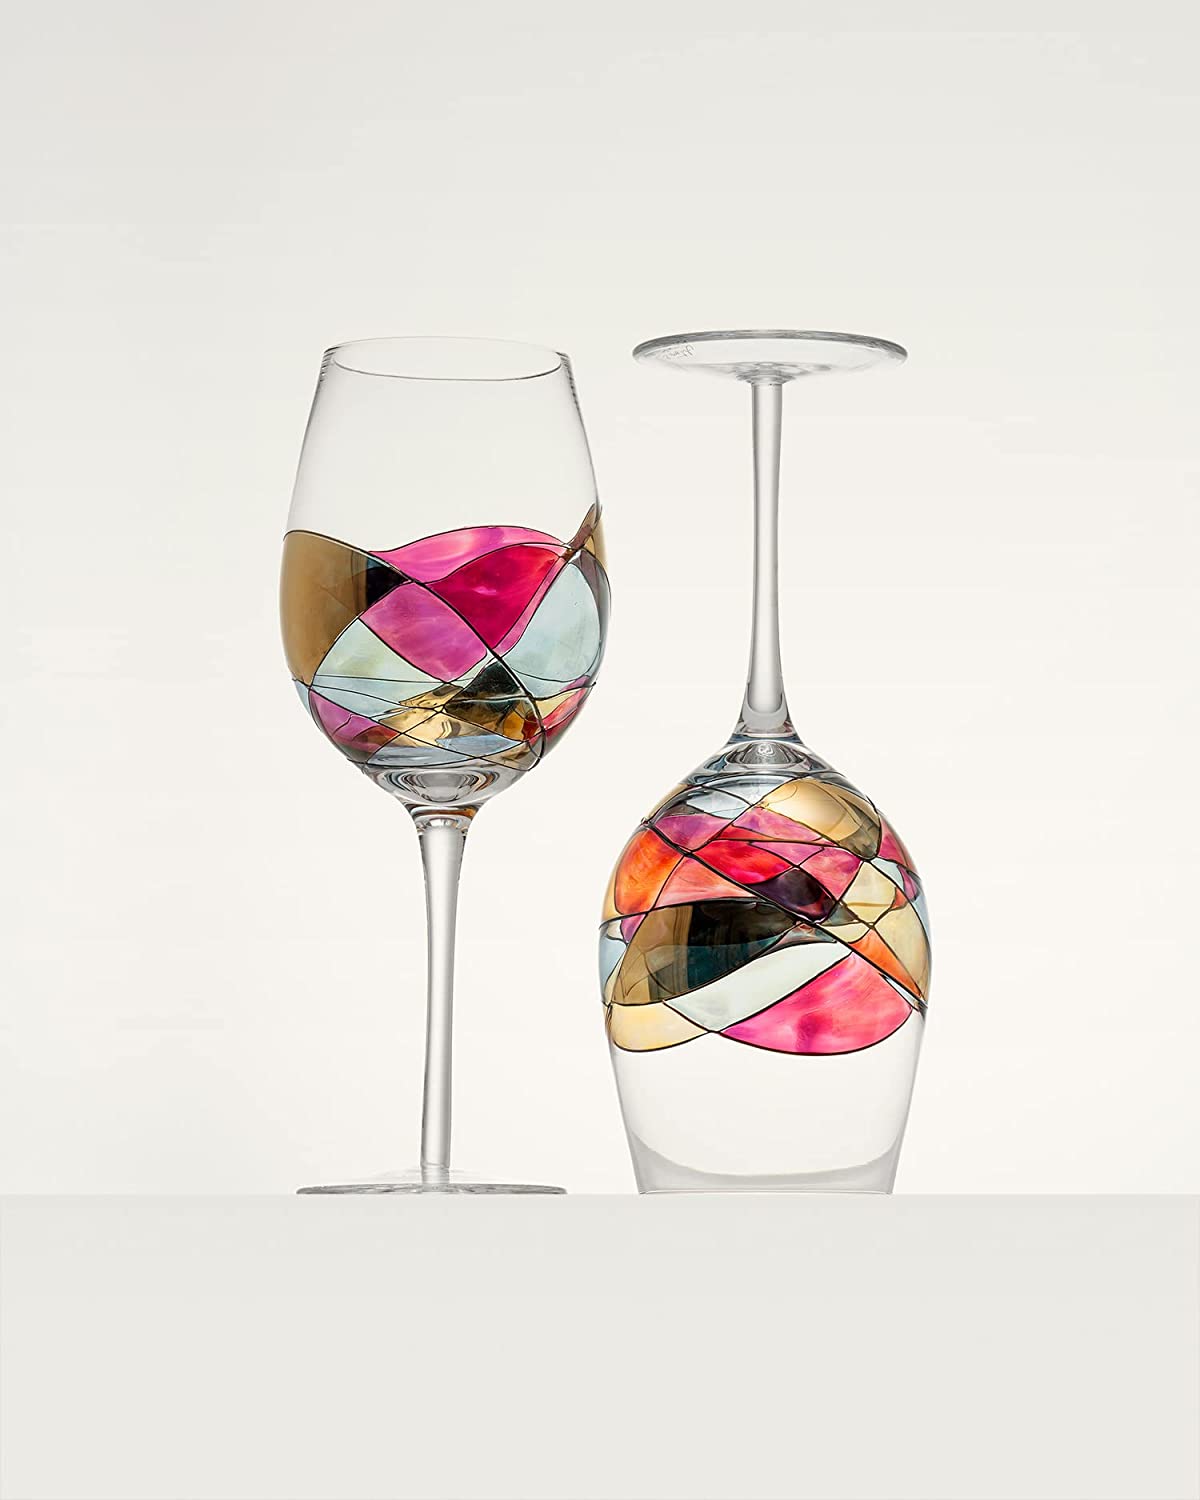 Dining, Unique Wine Glasses